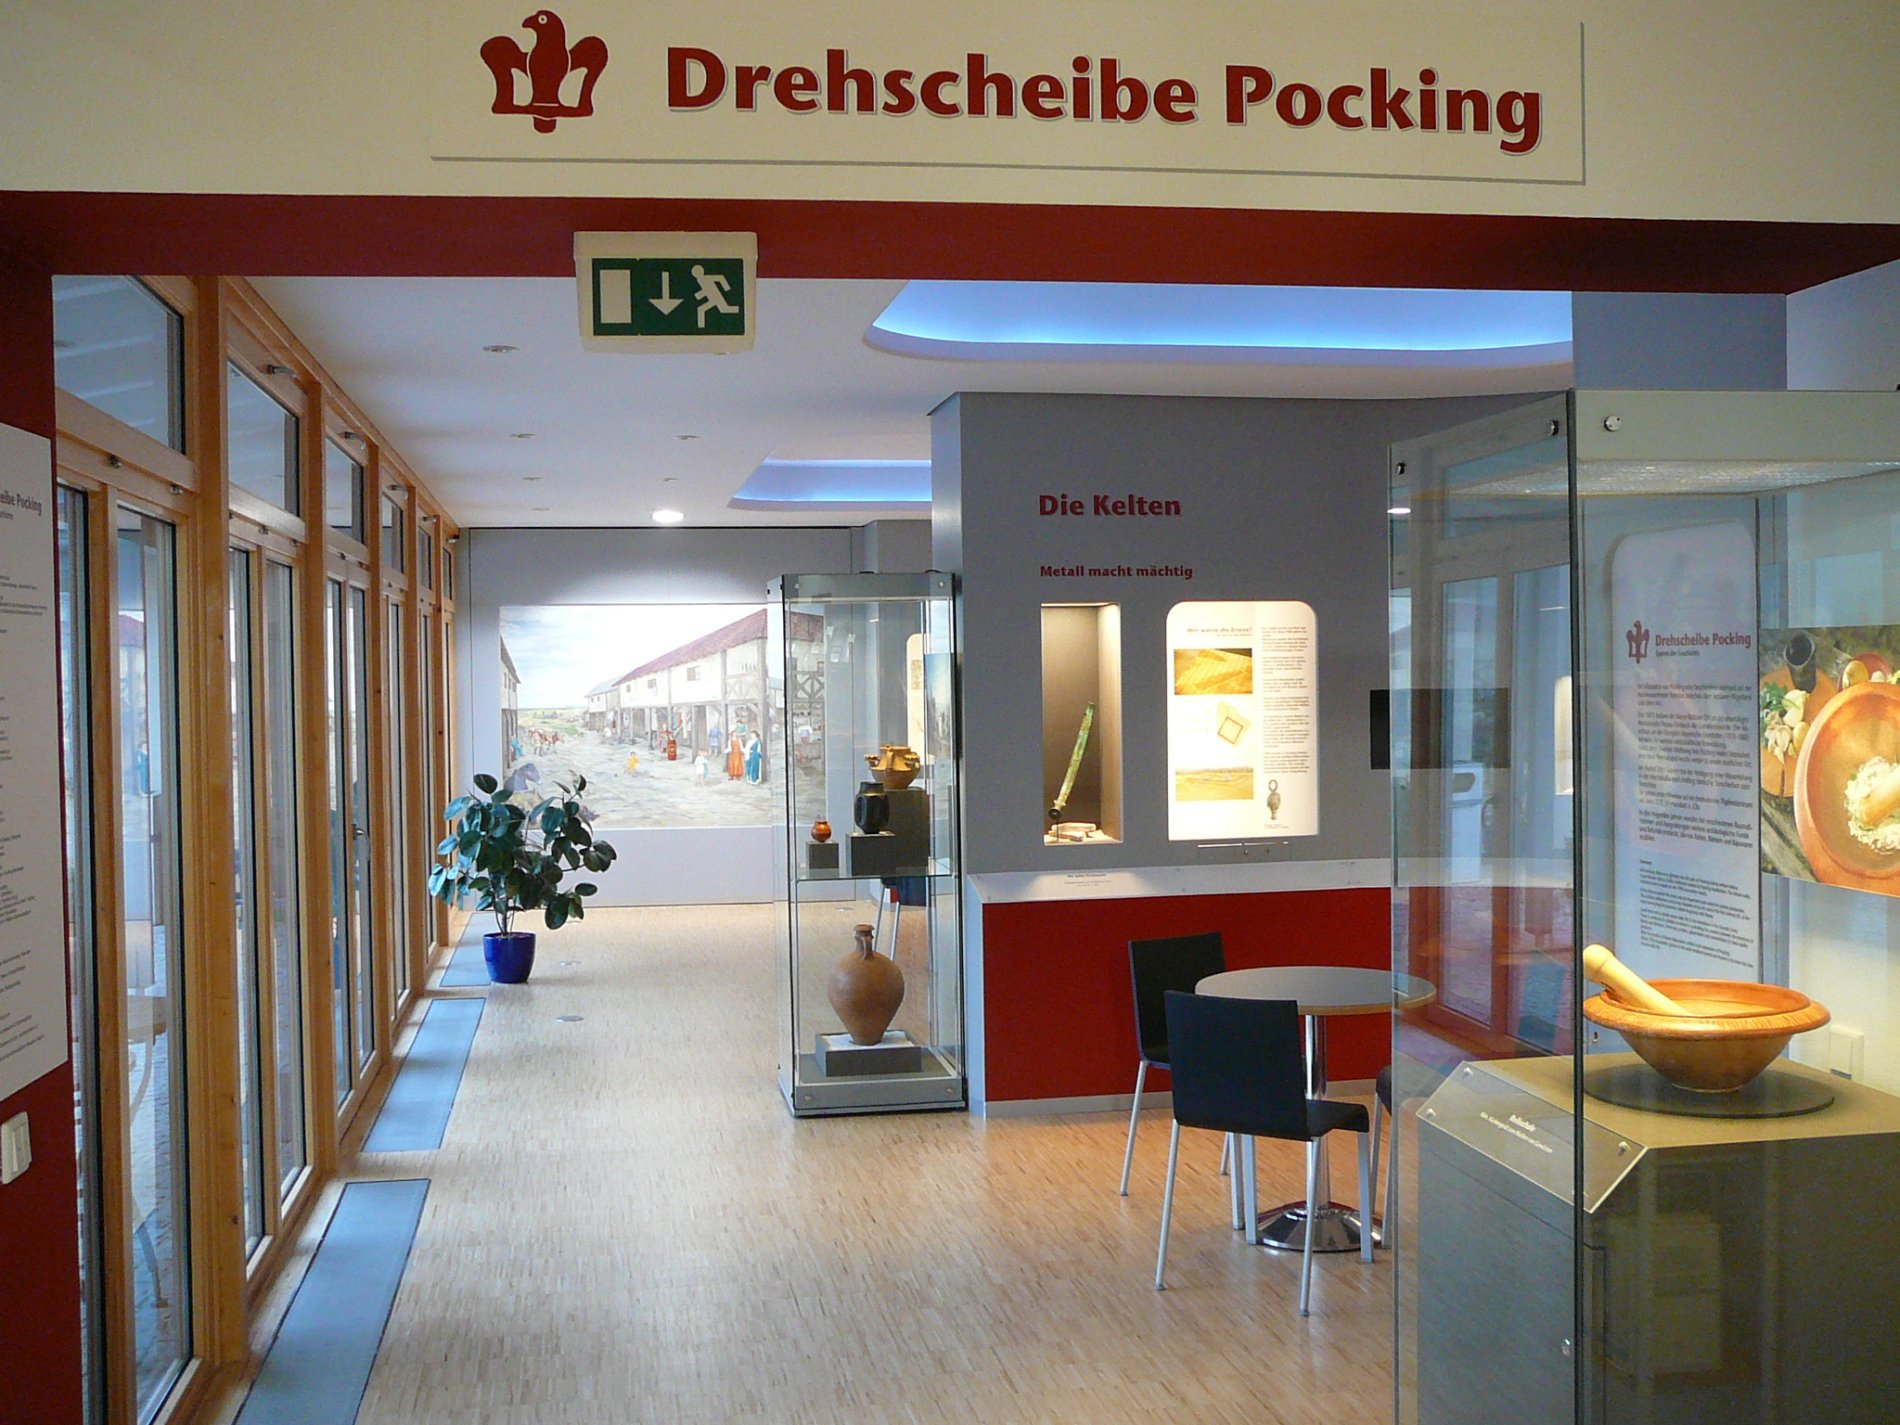 Drehscheibe Pocking